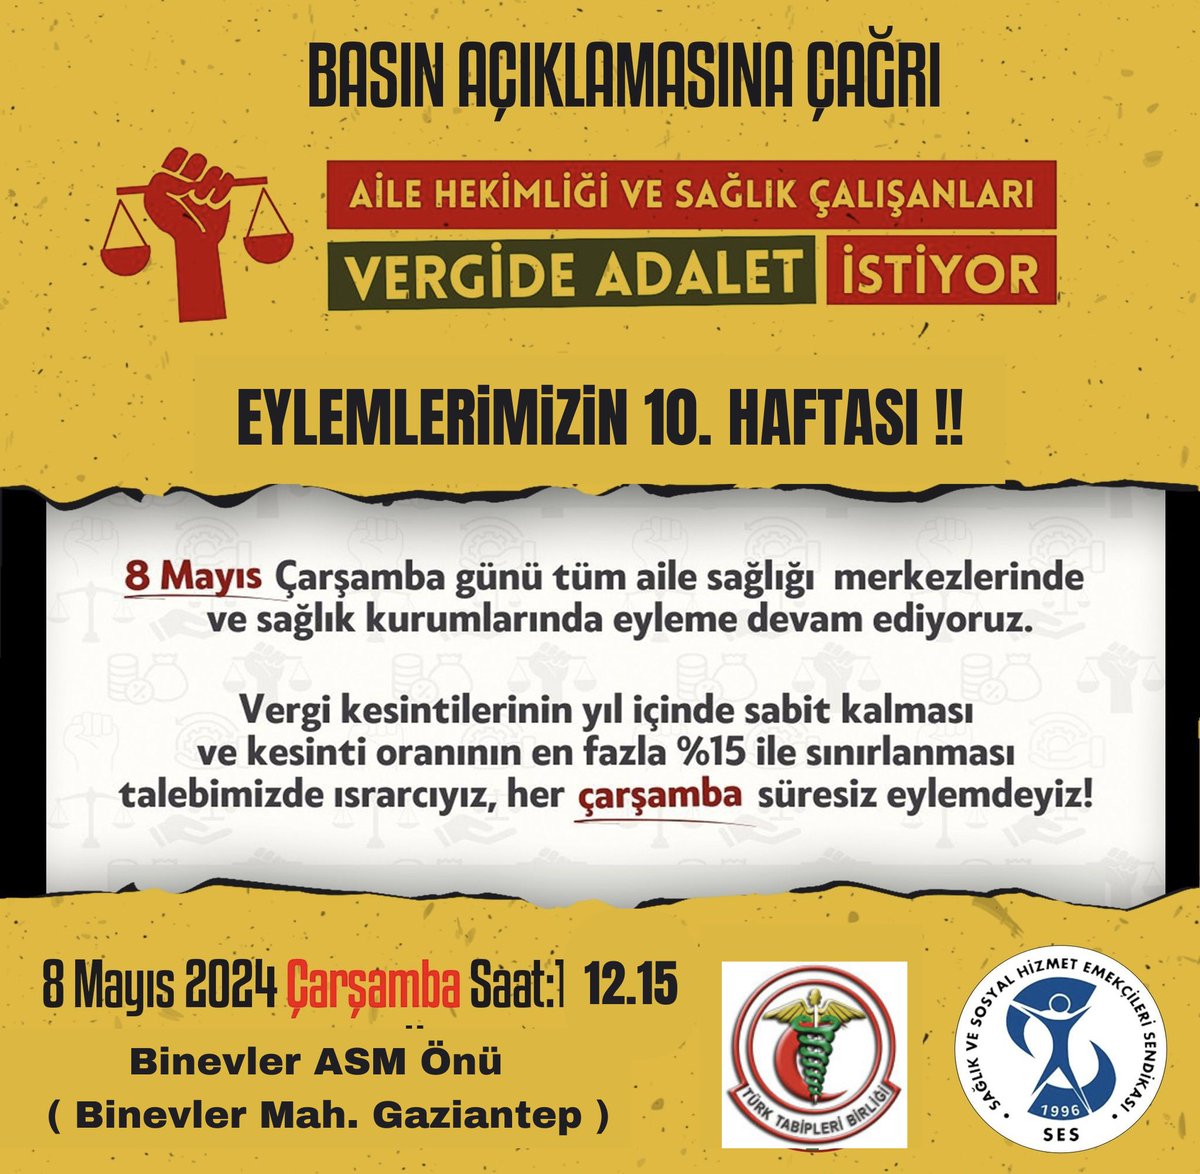 Vergide Adalet Eylemi 10. Haftasında Gaziantep Binevler ASM önünde olacağız. #vergideadalet istiyoruz.